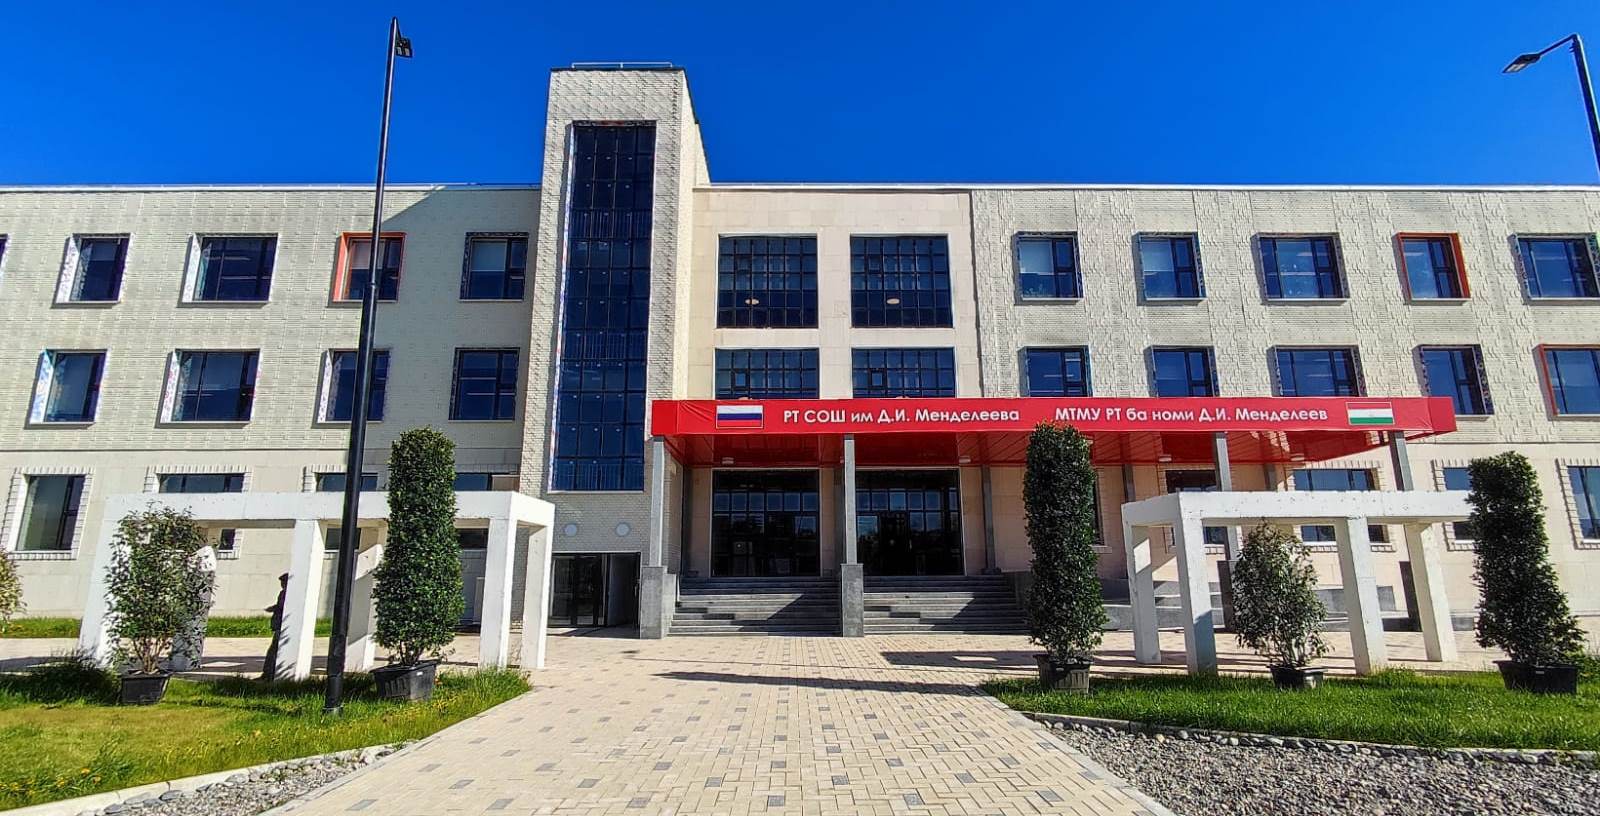 Строительство российских школ в Таджикистане. Громкий проект может вызвать не менее громкий скандал 